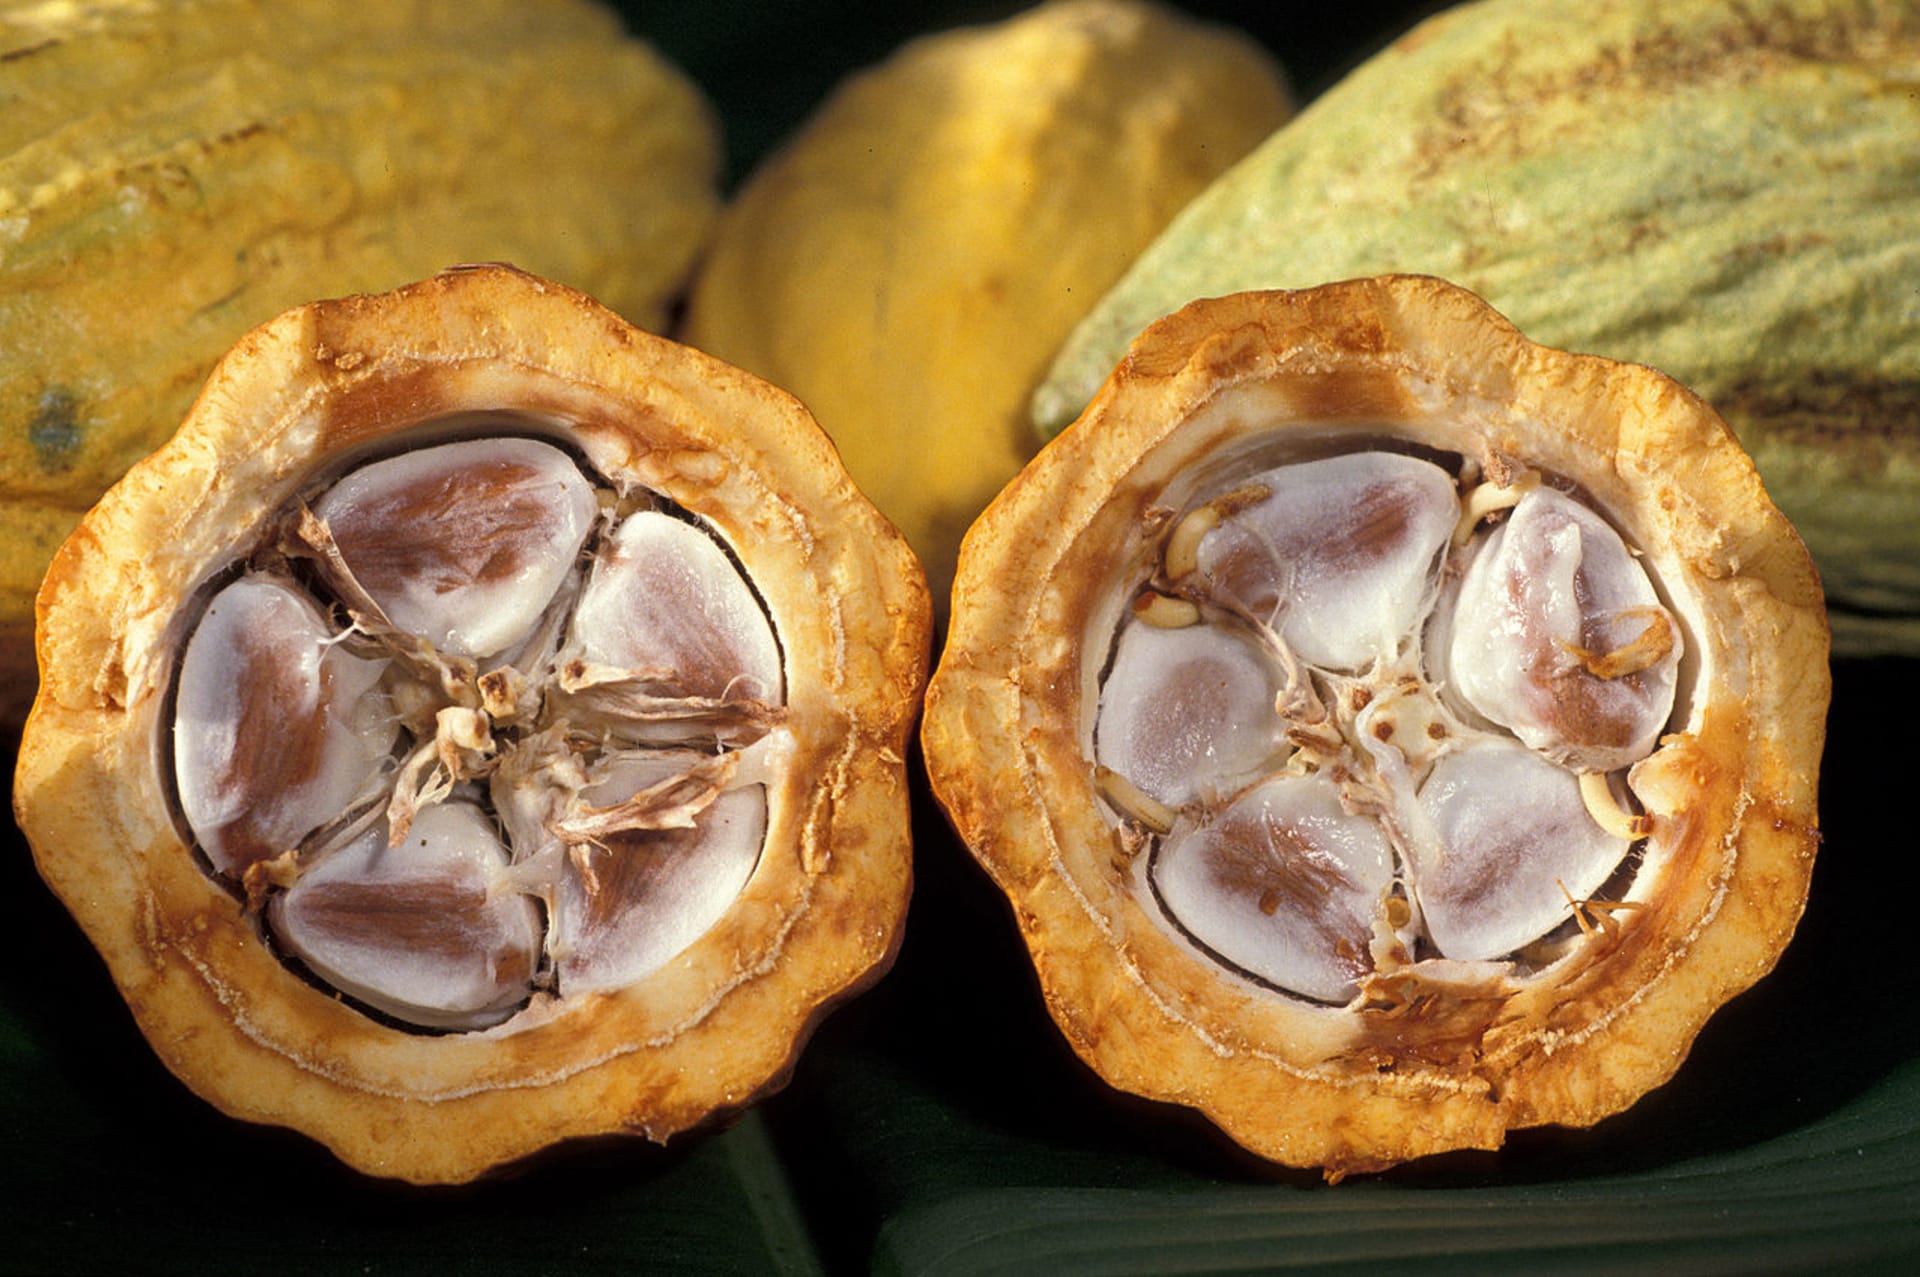 Kakaové boby v reálu